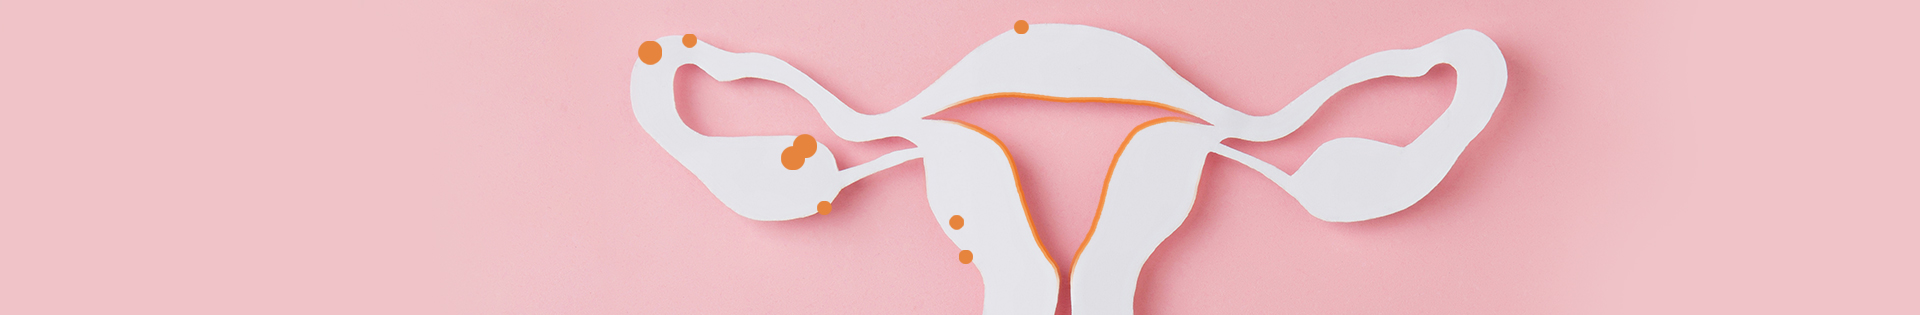 Endométrio e endometriose: qual é a relação?